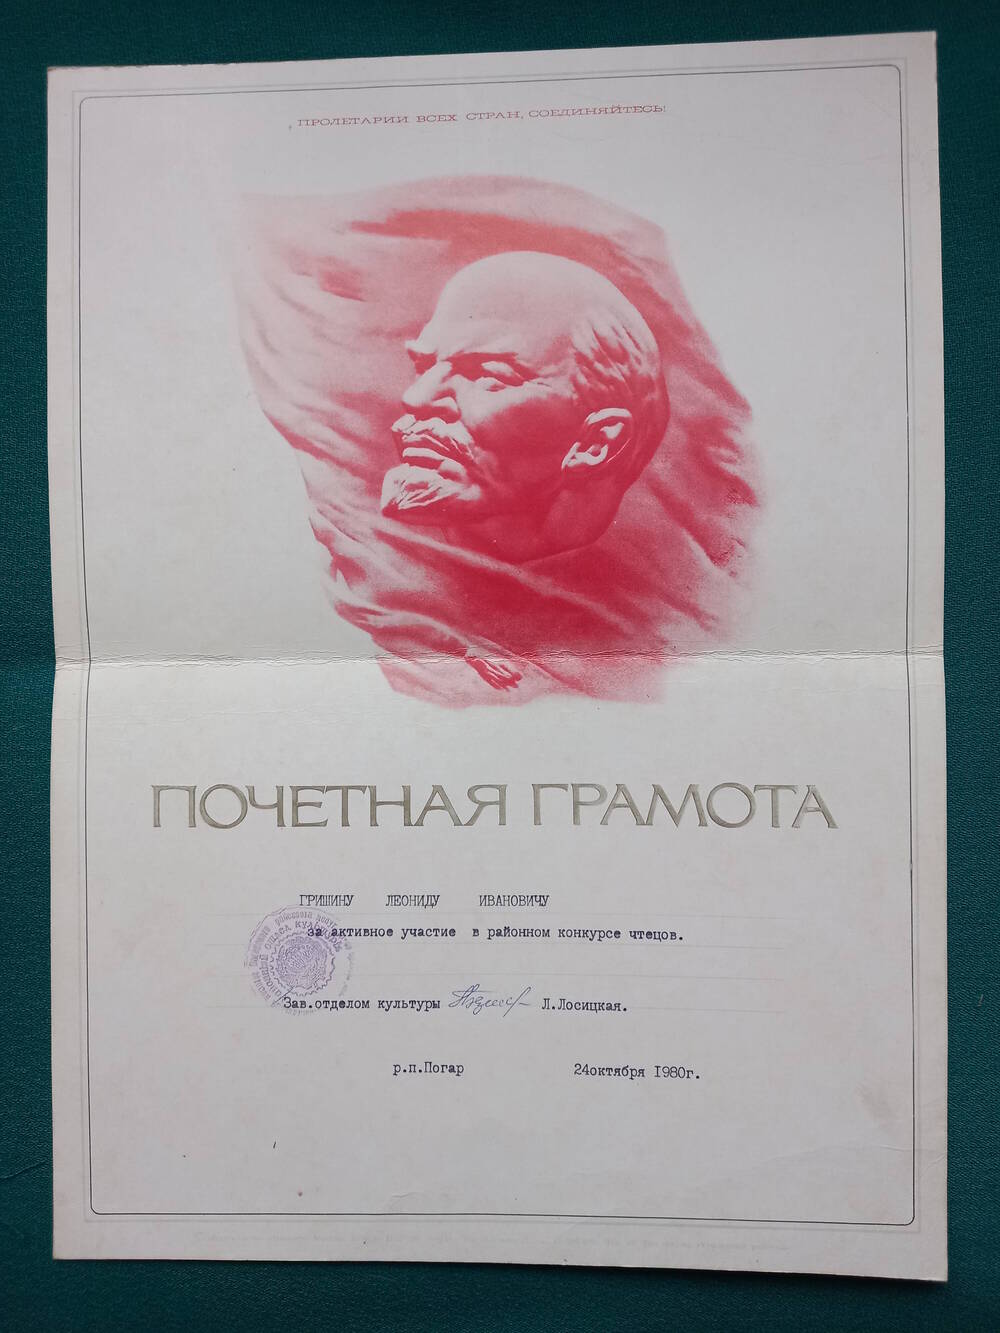 Почетная грамота Гришину Л.И. за участие в конкурсе чтецов. 1980 г.